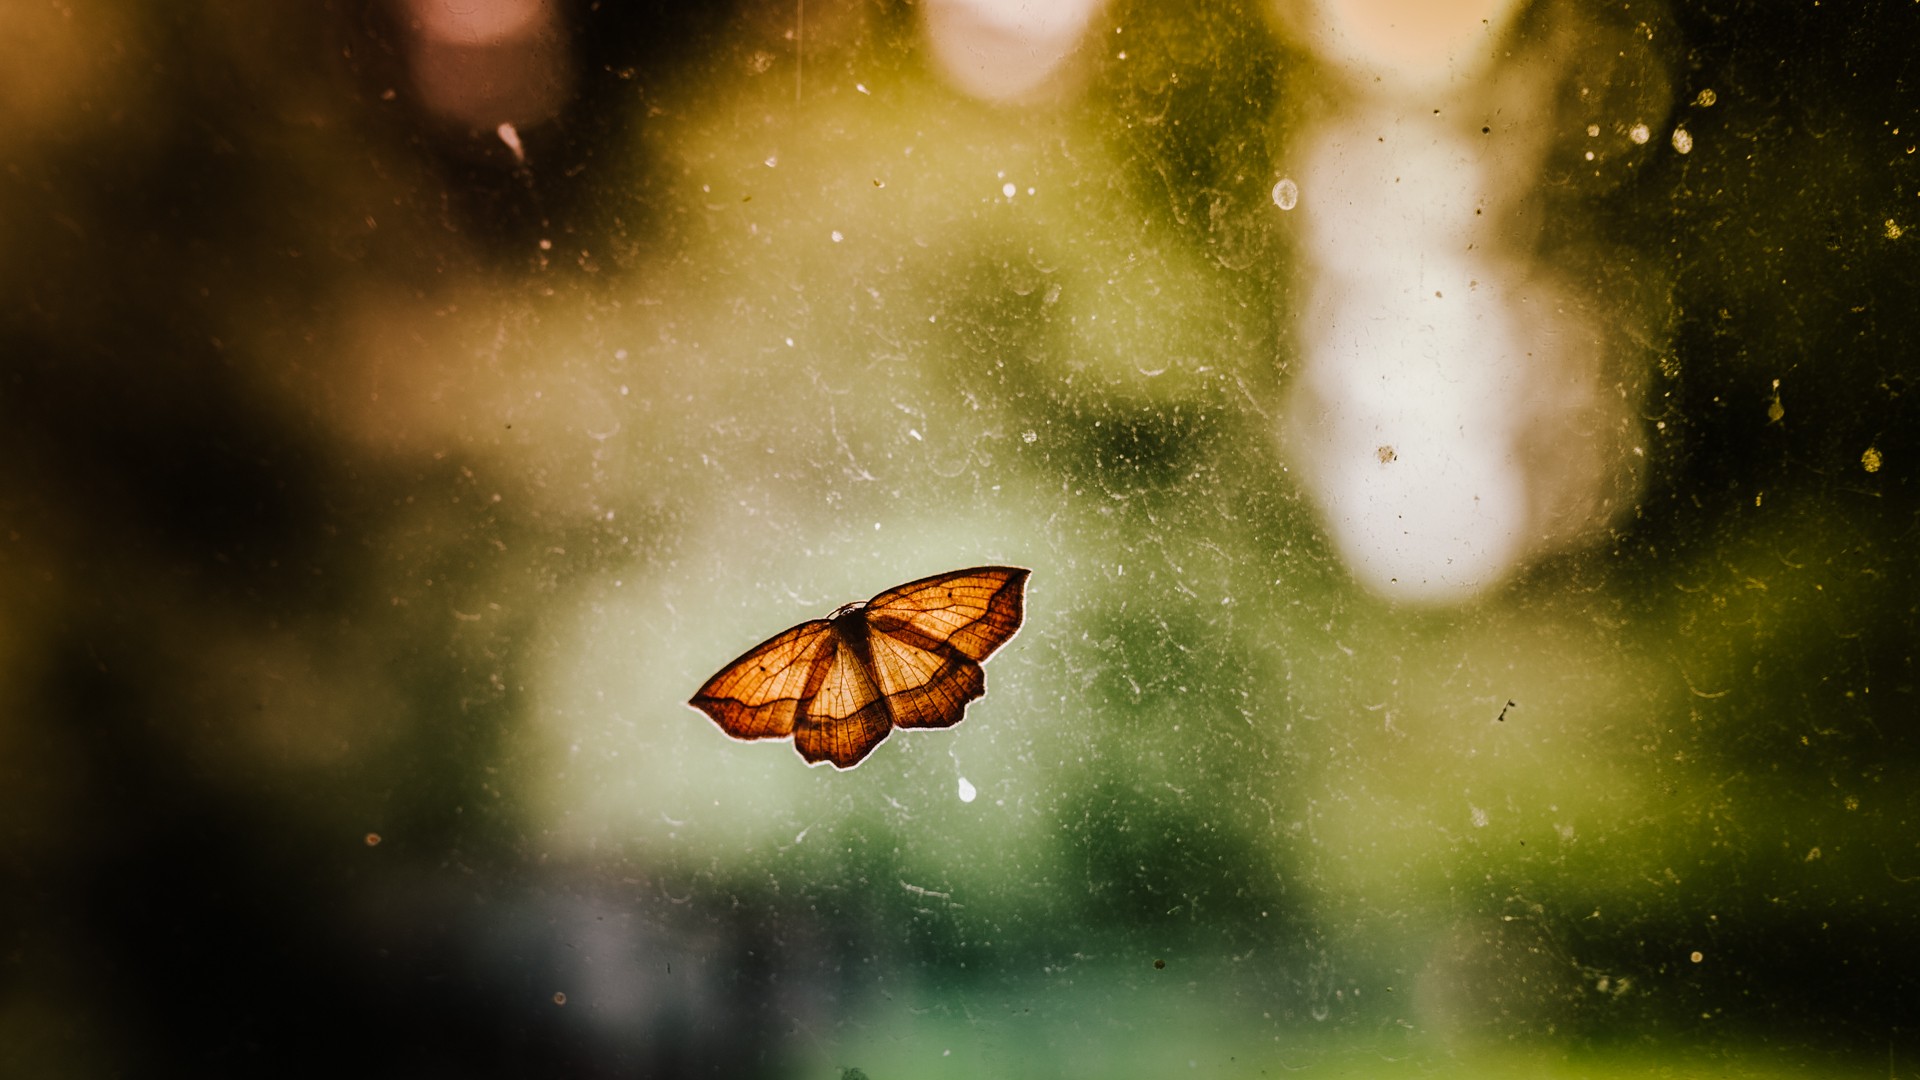 Brown Butterfly on Window - Wallpaper #44265